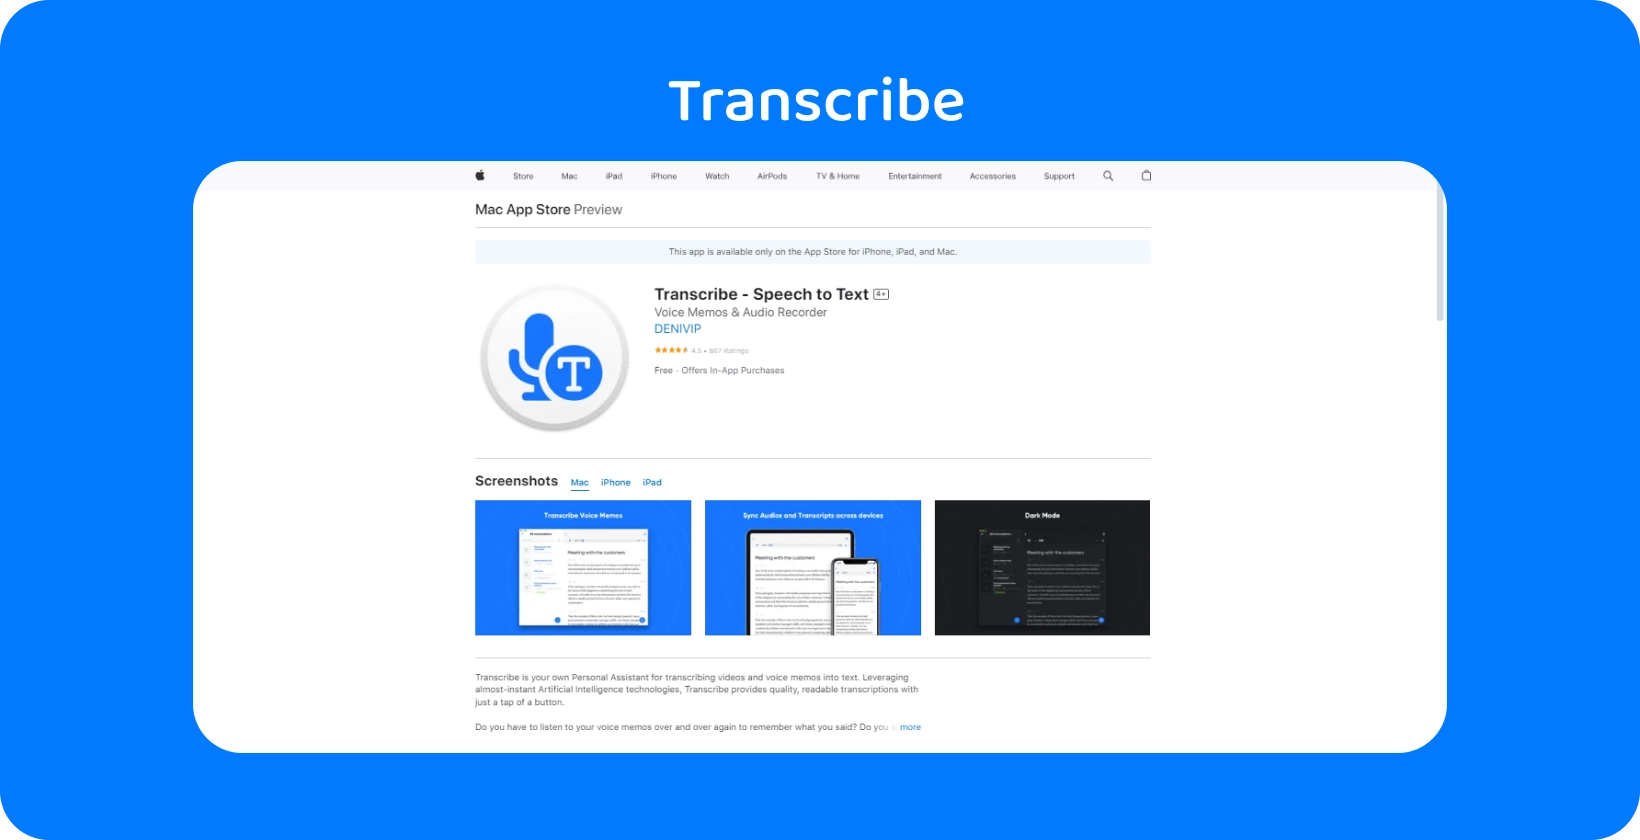 Скріншот програми Transcribe на Mac App Store, що підкреслює її можливості перетворення мовлення в текст.